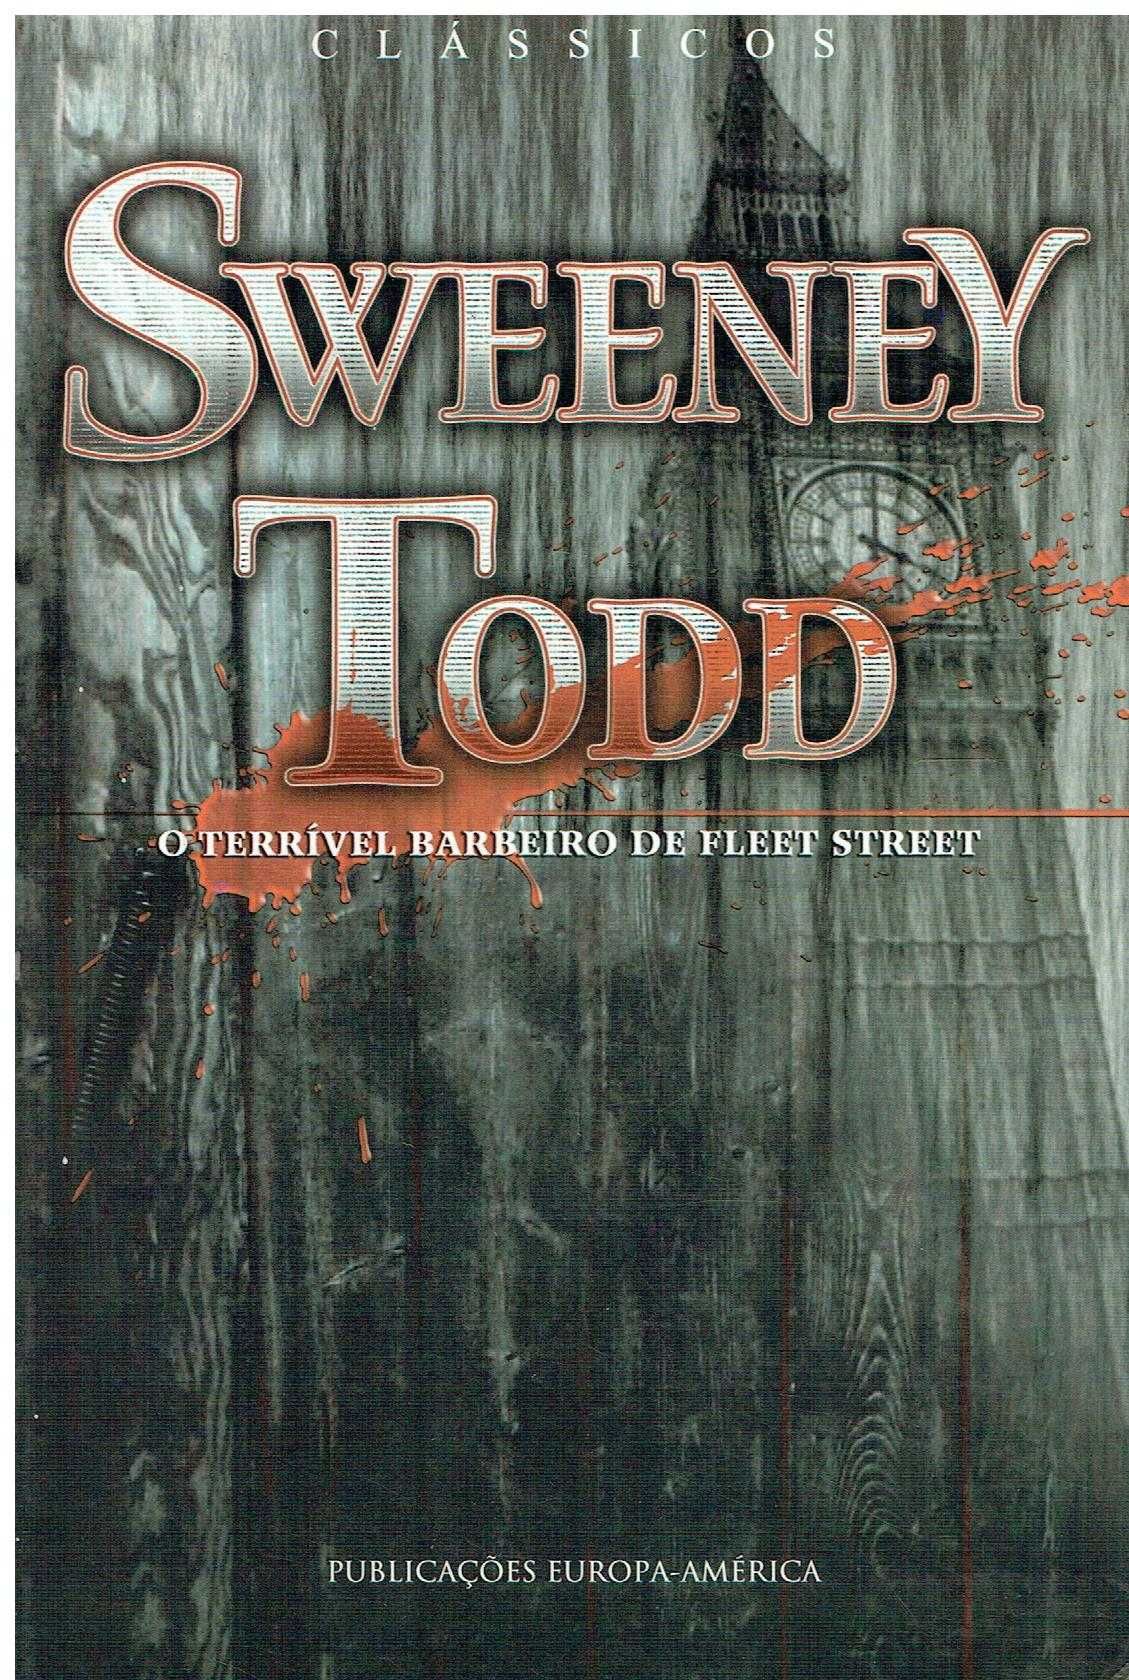 13438

Sweeney Todd
de Edward Lloyd;